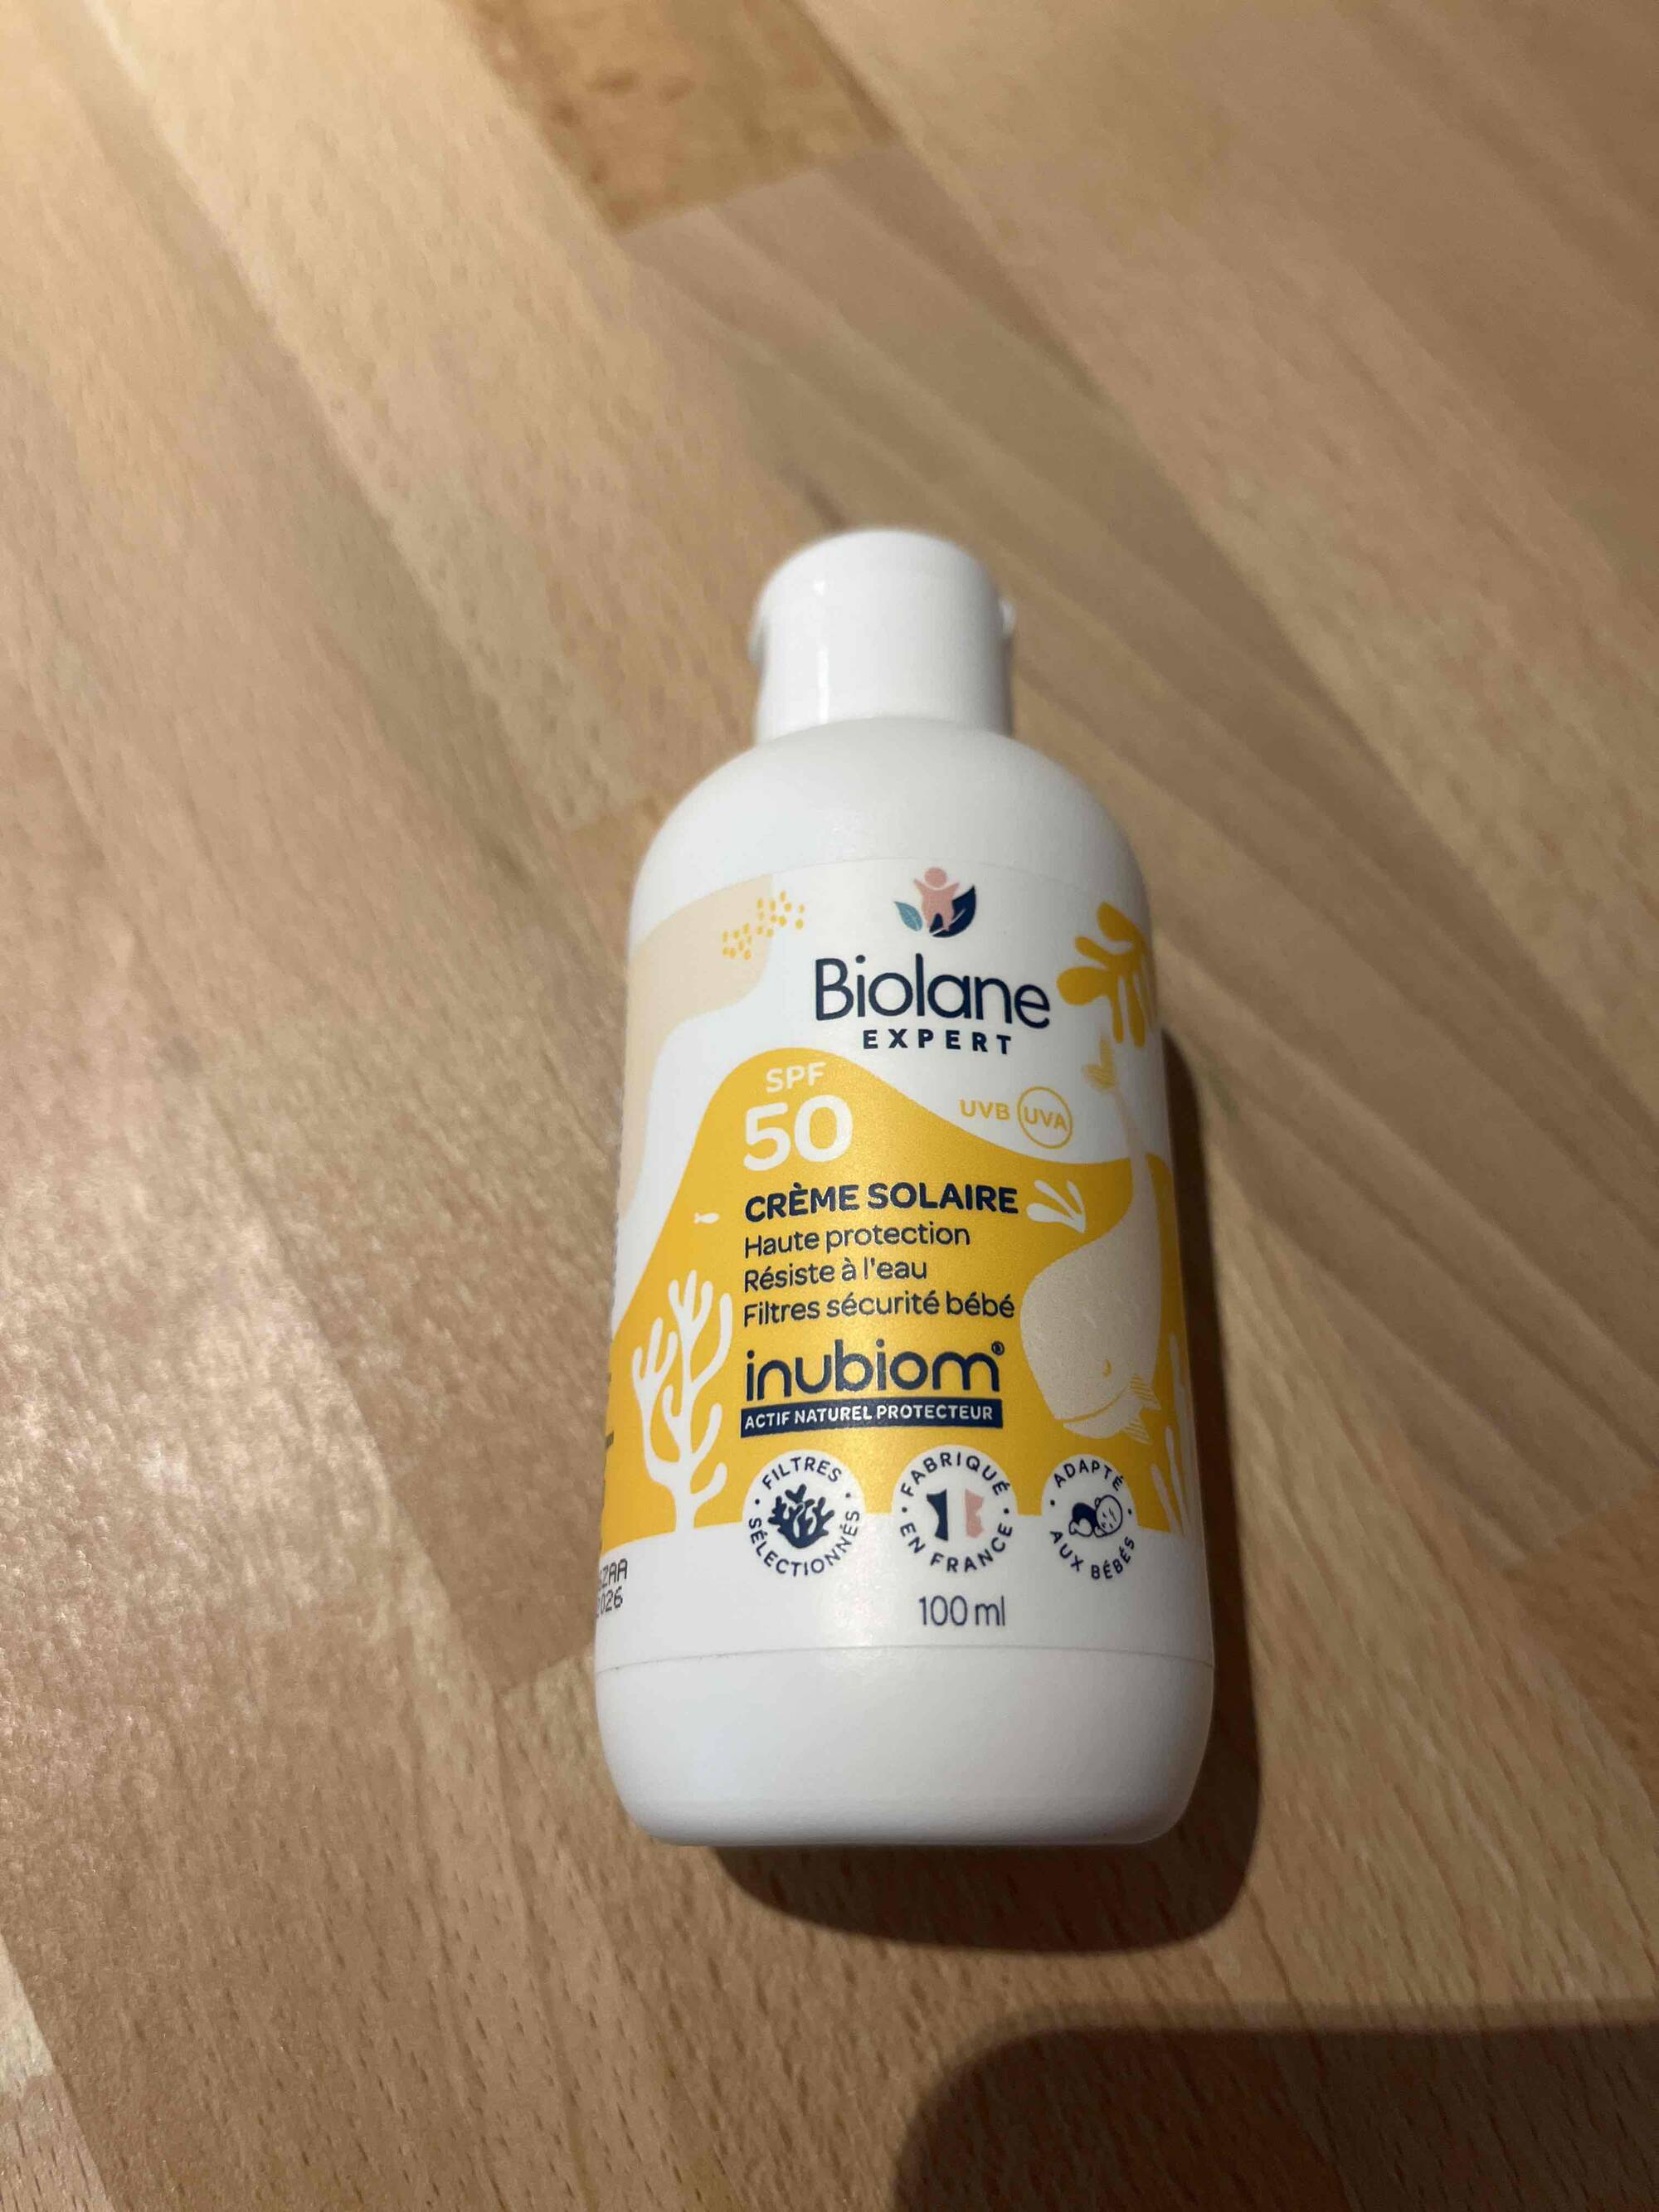 BIOLANE - Expert - Crème solaire SPF 50 filtre sécurité bébé